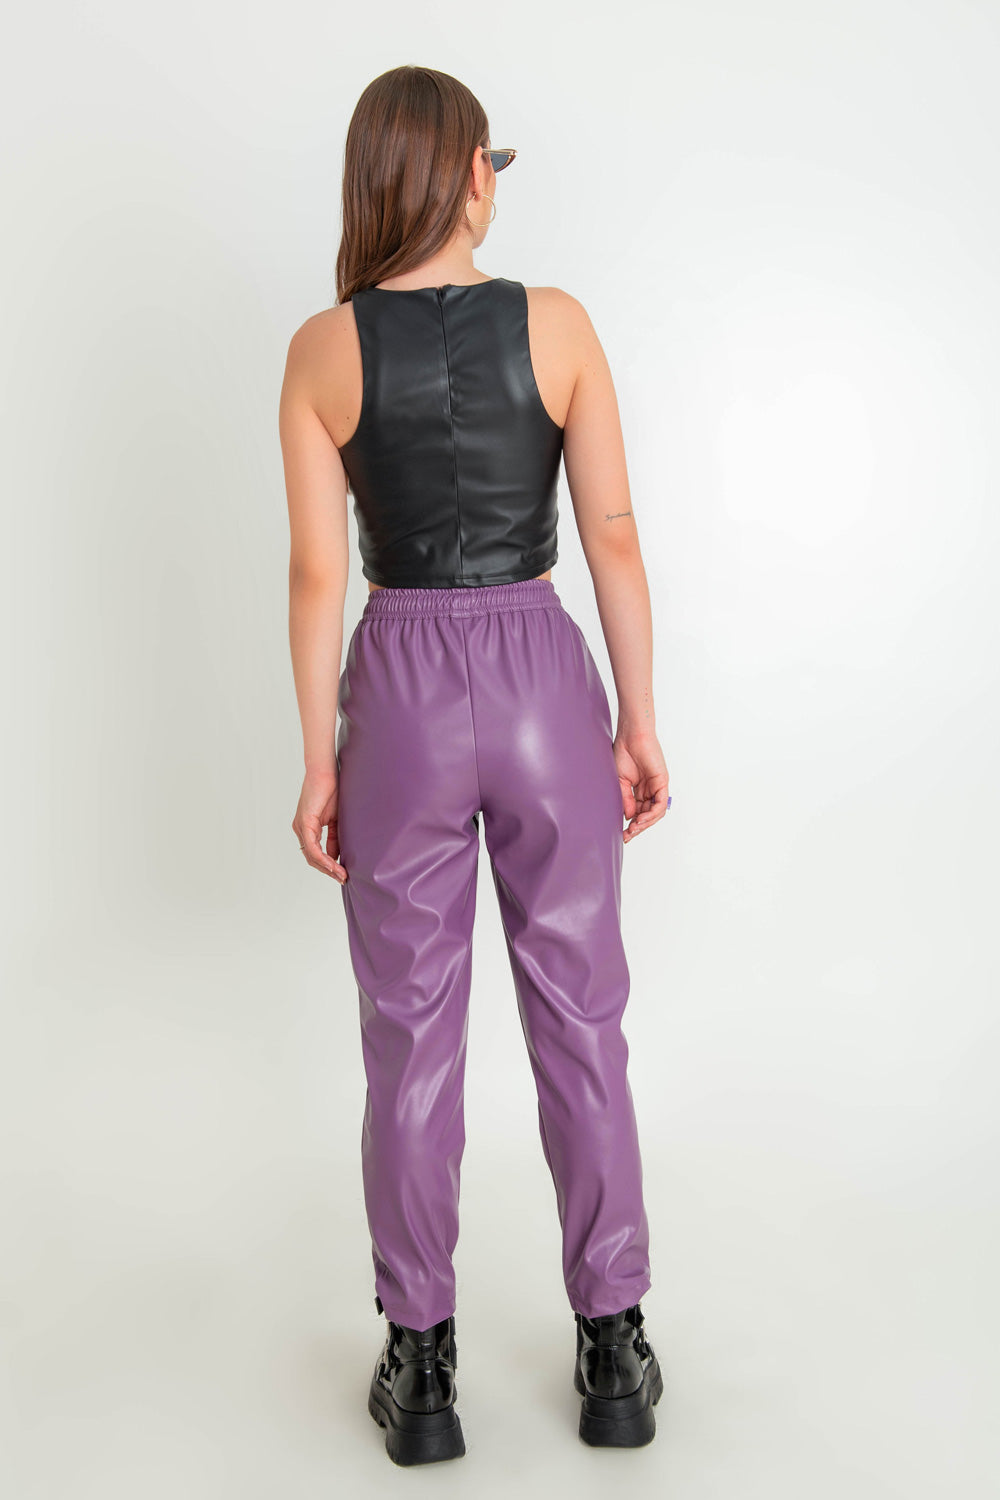 Pantalón jogger de fit recto, efecto piel, cintura alta con pretina elástica, bolsillos delanteros y jareta frontal ajustable.